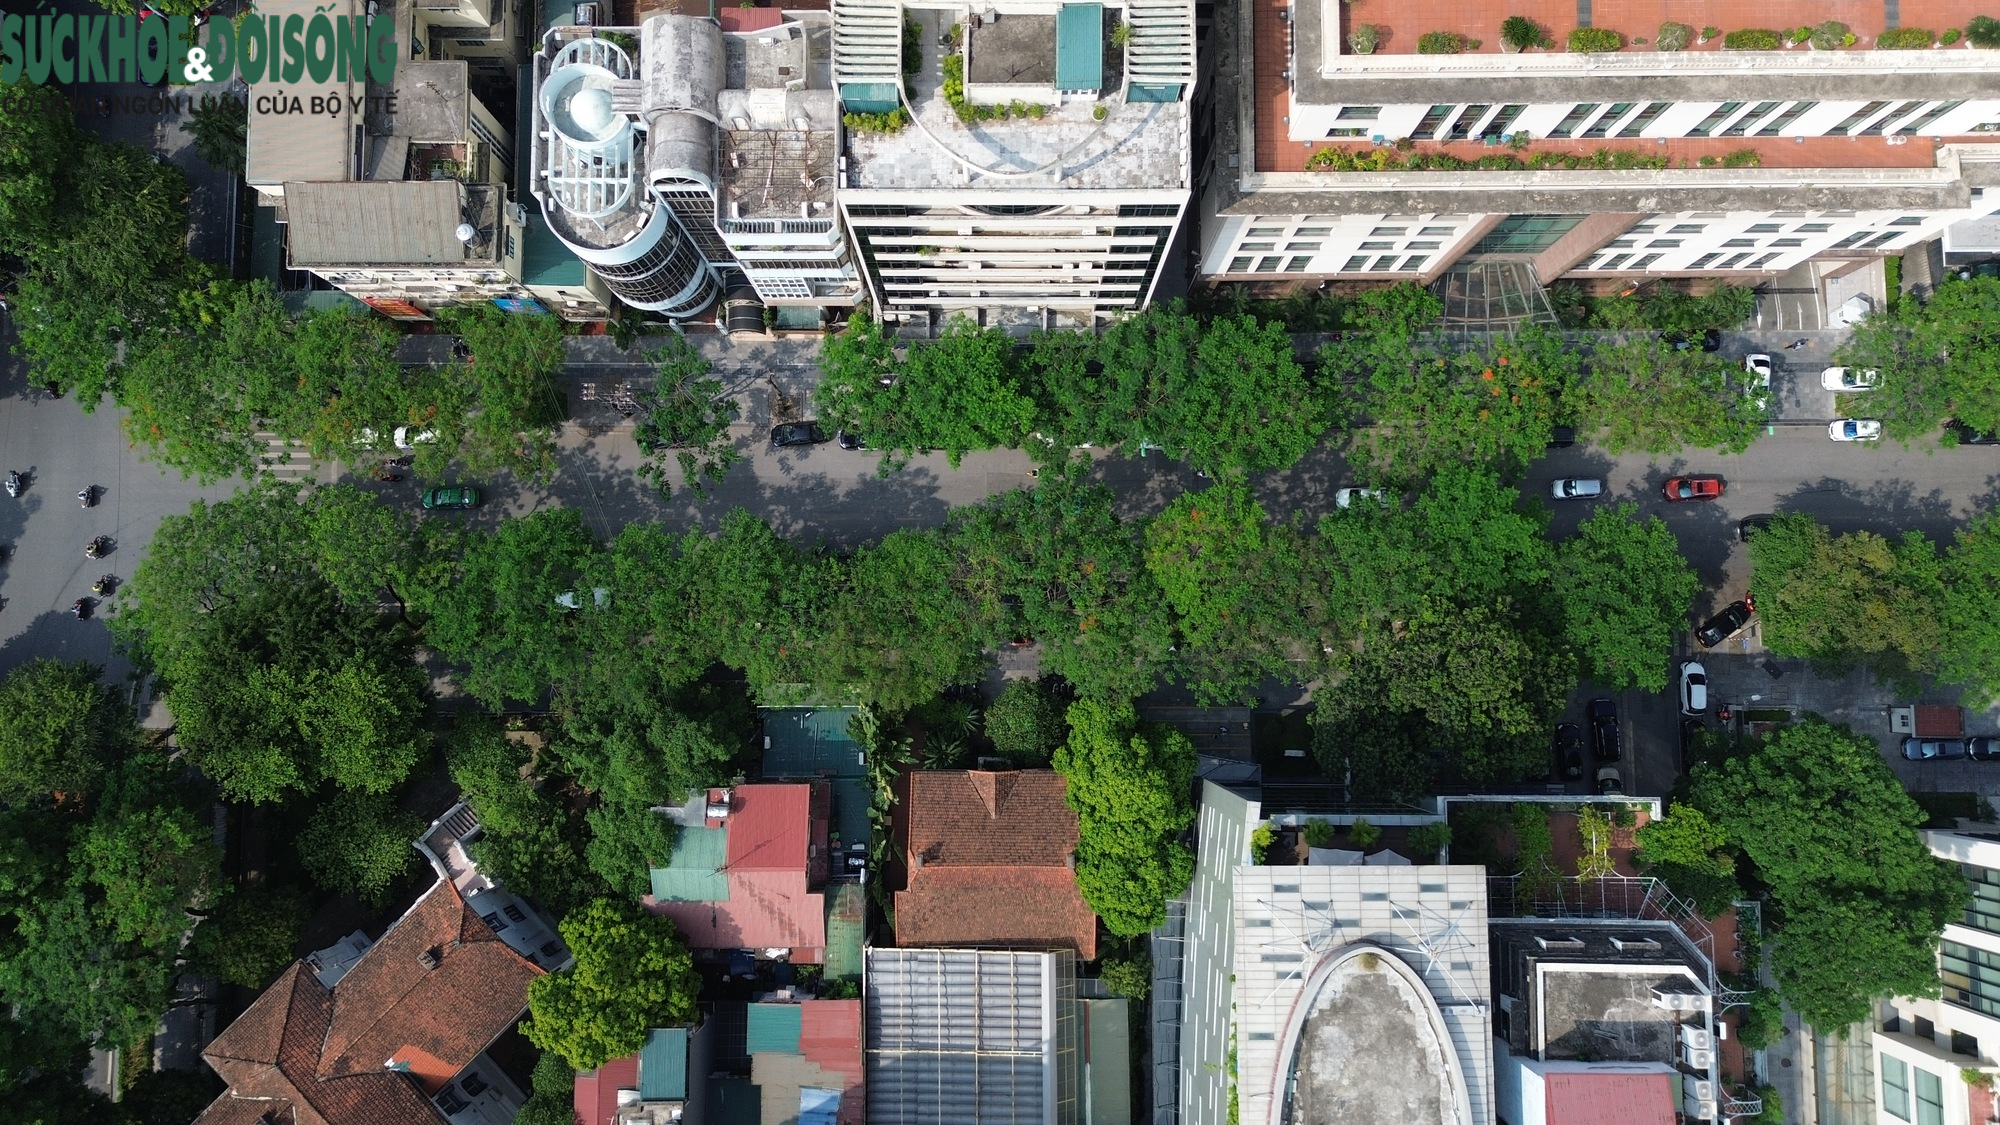 Ngắm nhìn toàn cảnh tuyến phố Lý Thường Kiệt được quy hoạch thiết kế đô thị riêng - Ảnh 12.